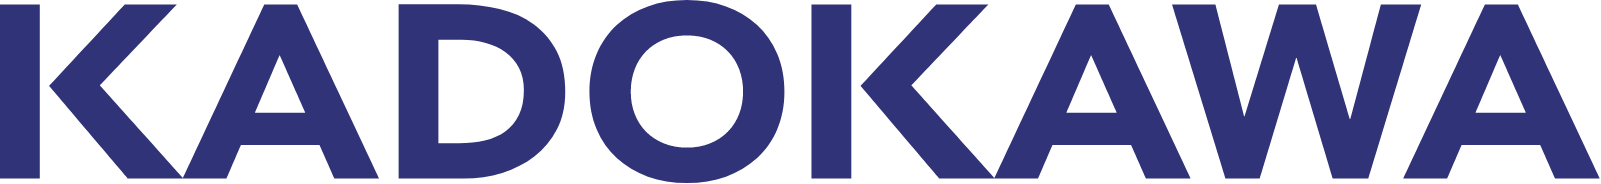 Kadokawa logo large (transparent PNG)